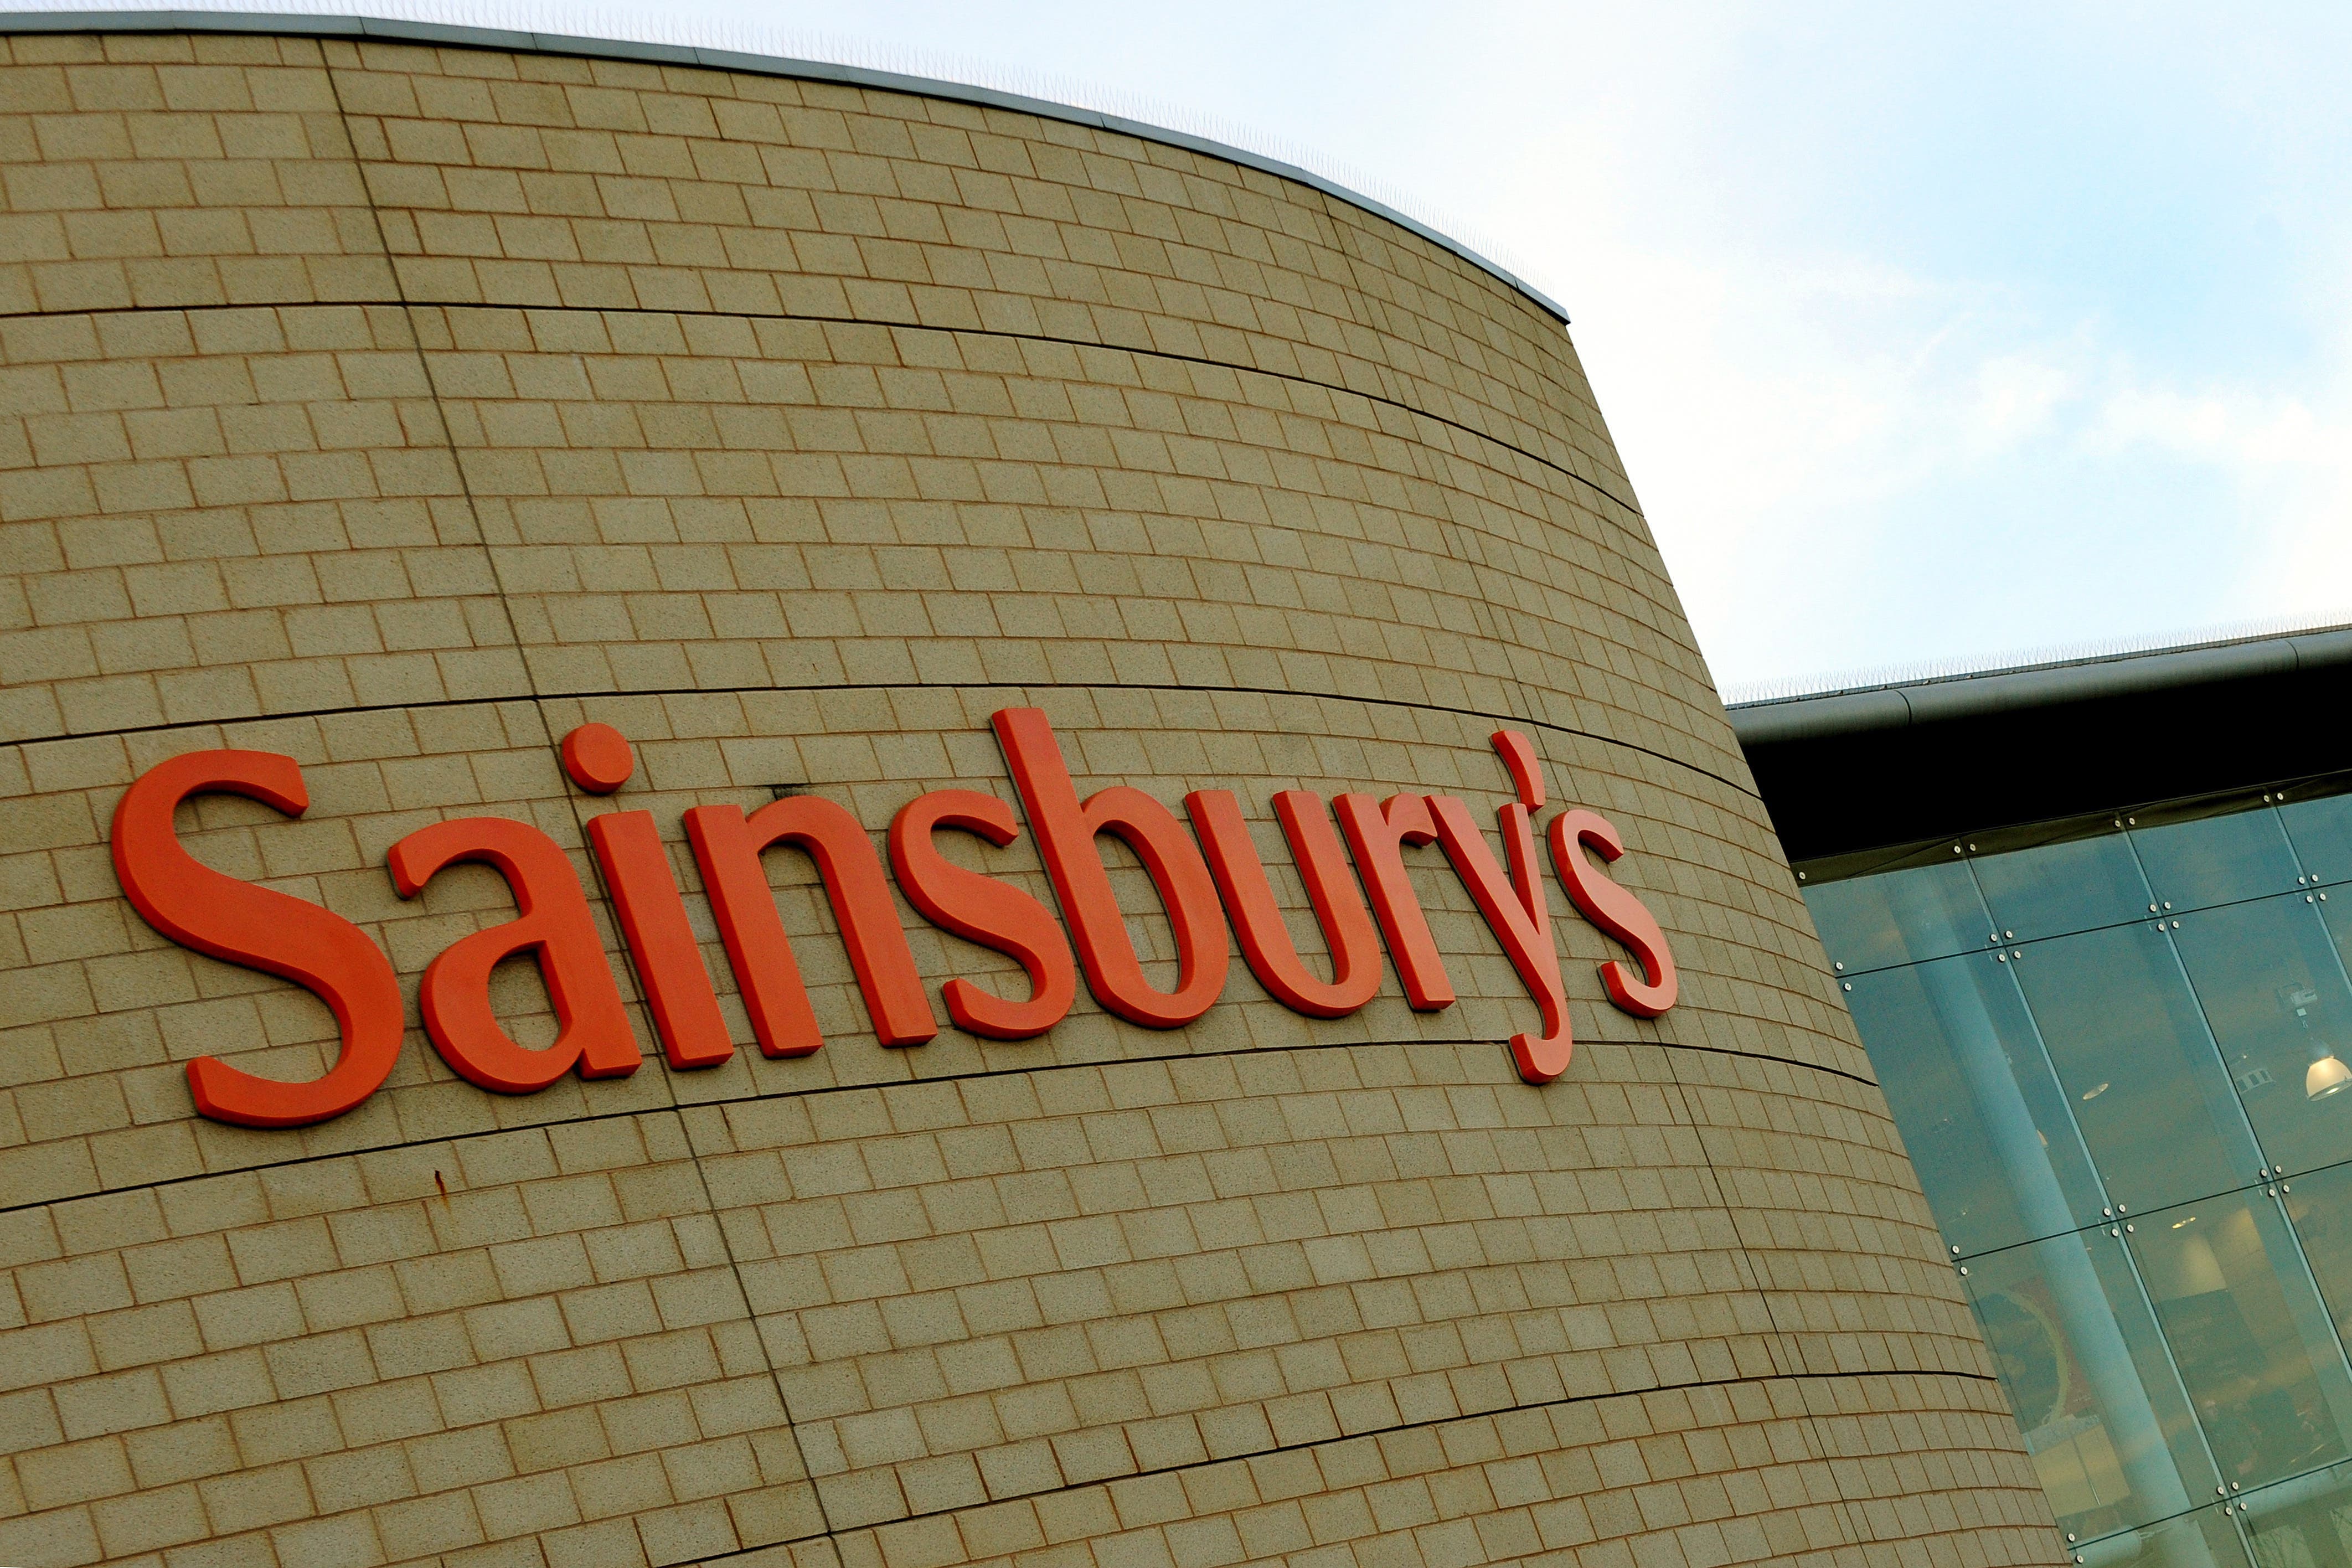 Sainsbury’s recalls popular food item over salmonella risk